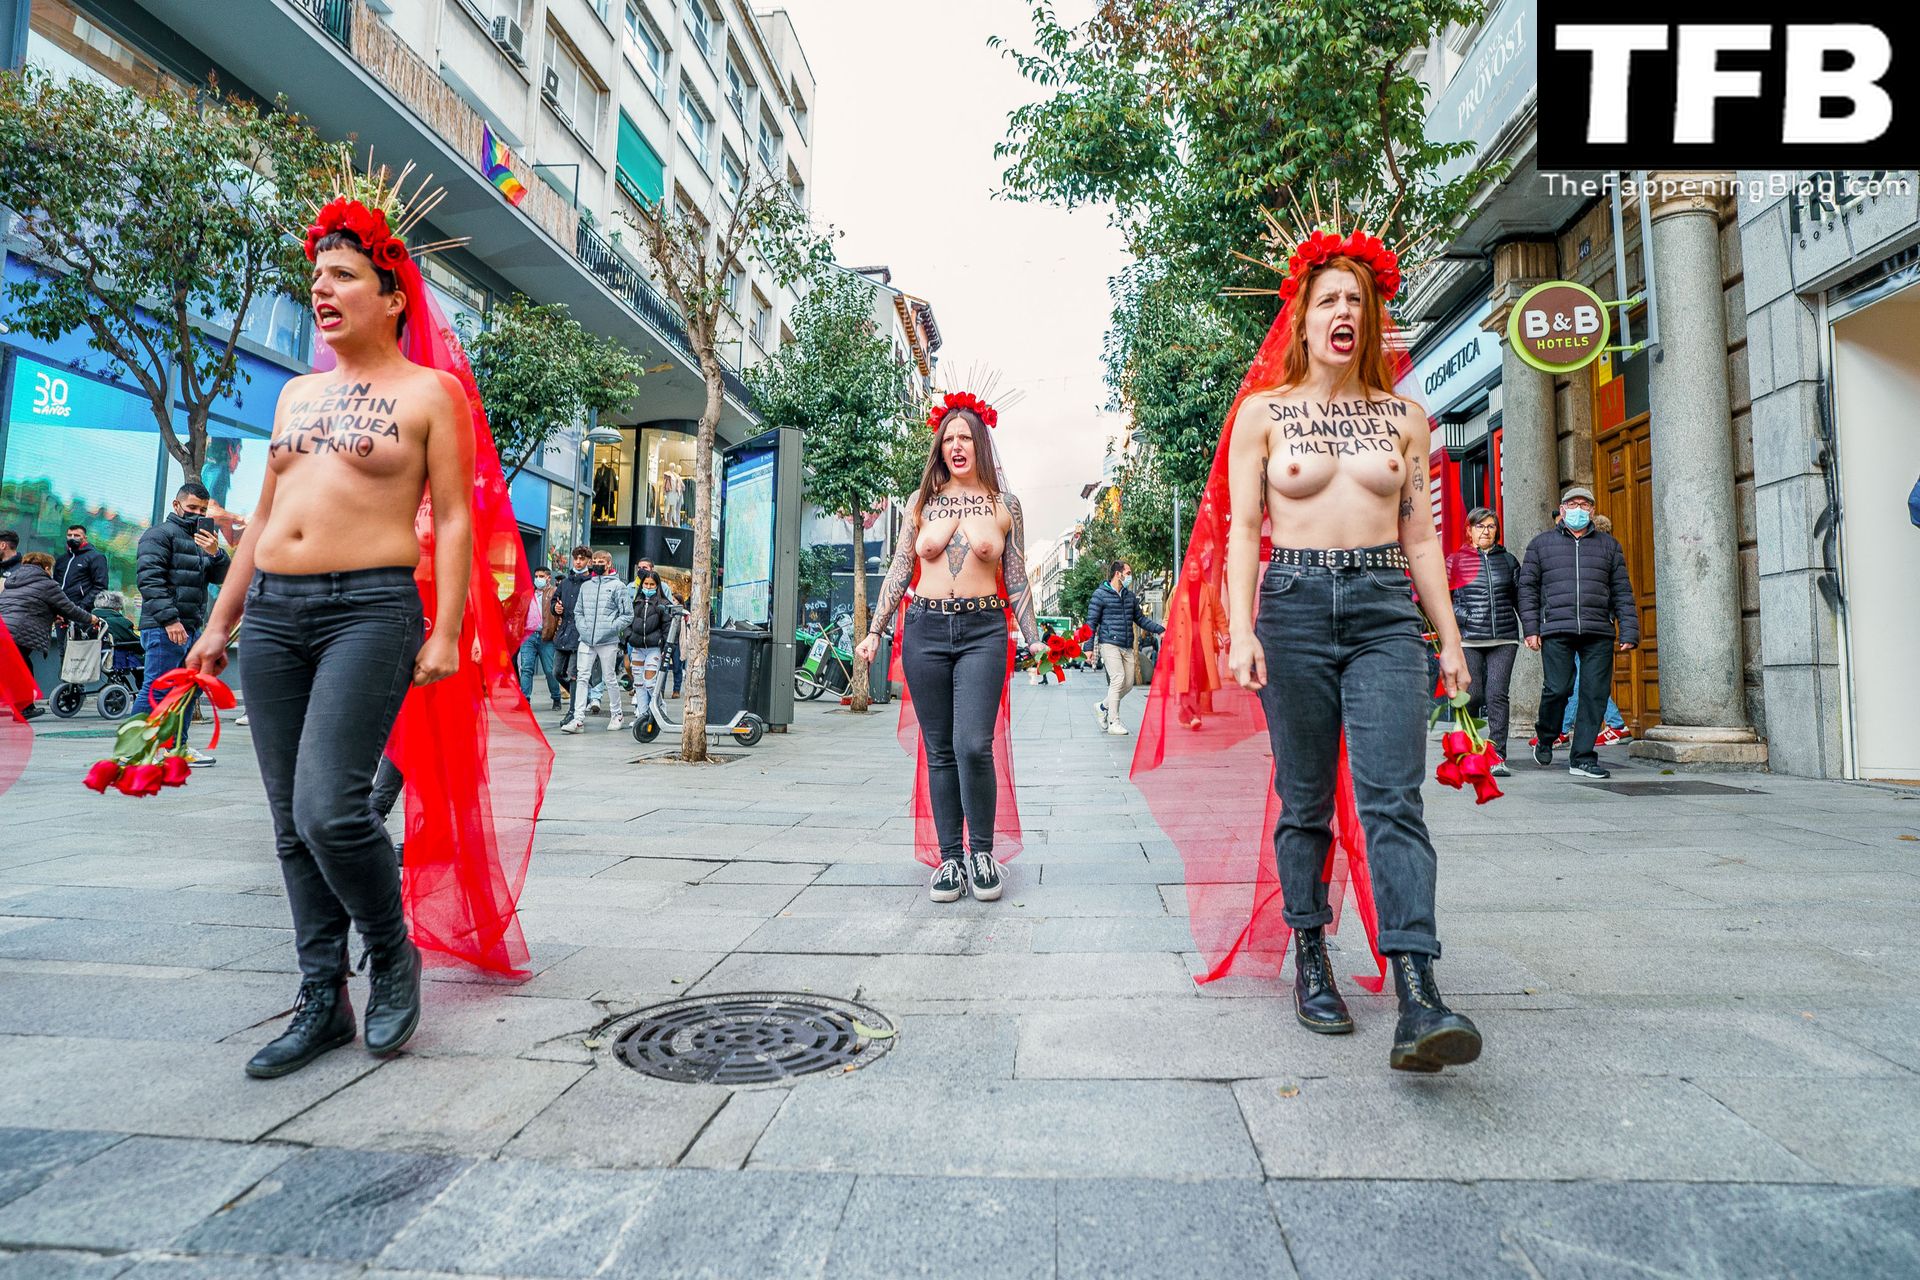 FEMEN-Topless-Girls-The-Fappening-Blog-14.jpg